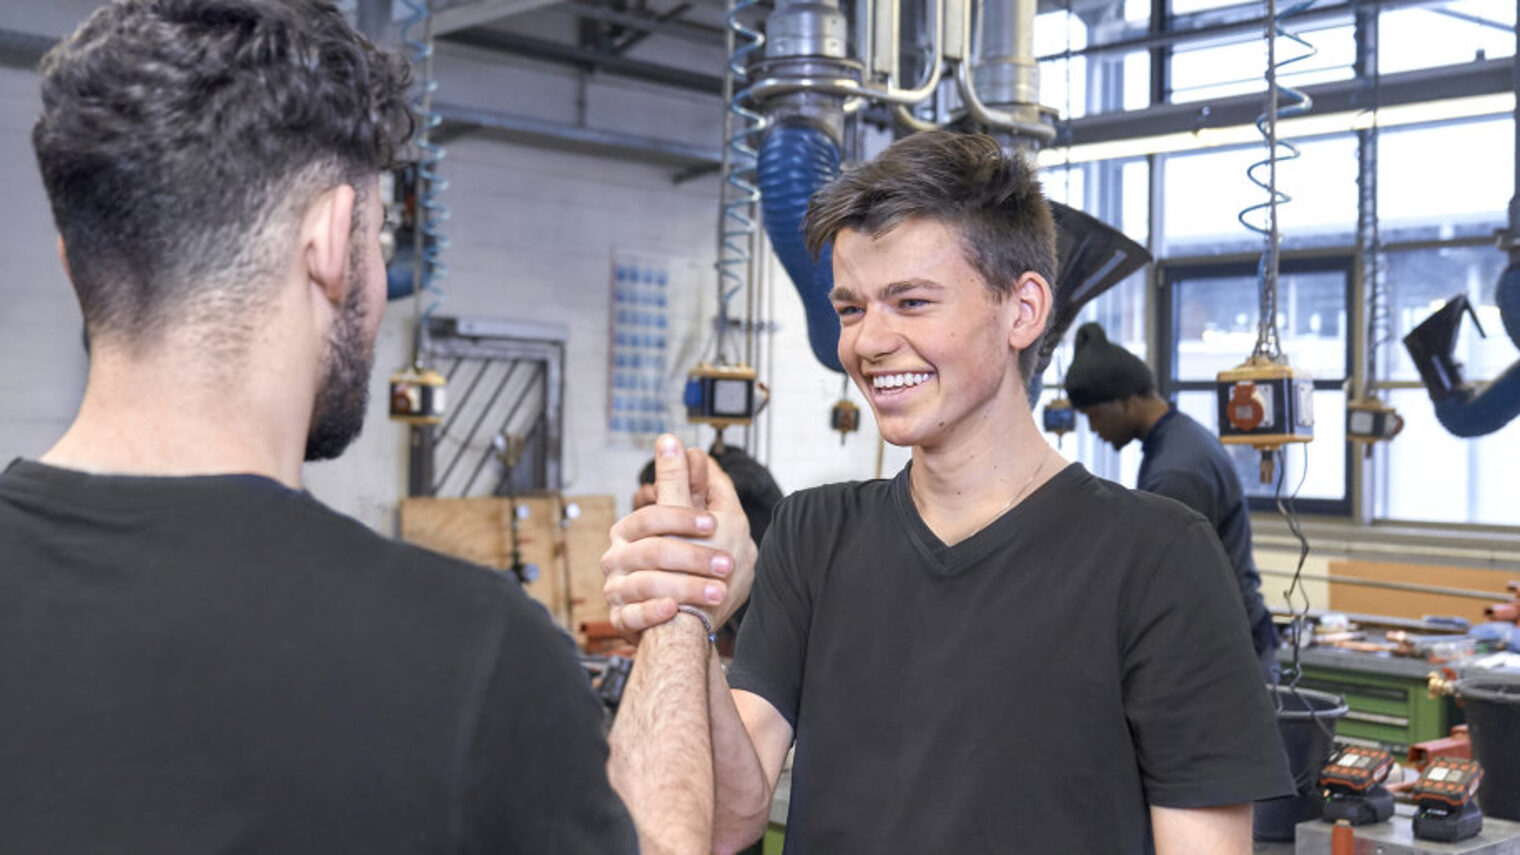 Zwei junge Männer in schwarzen T-Shirts begrüßen sich in einer Werkstatt lachend mit einem Handschlag.